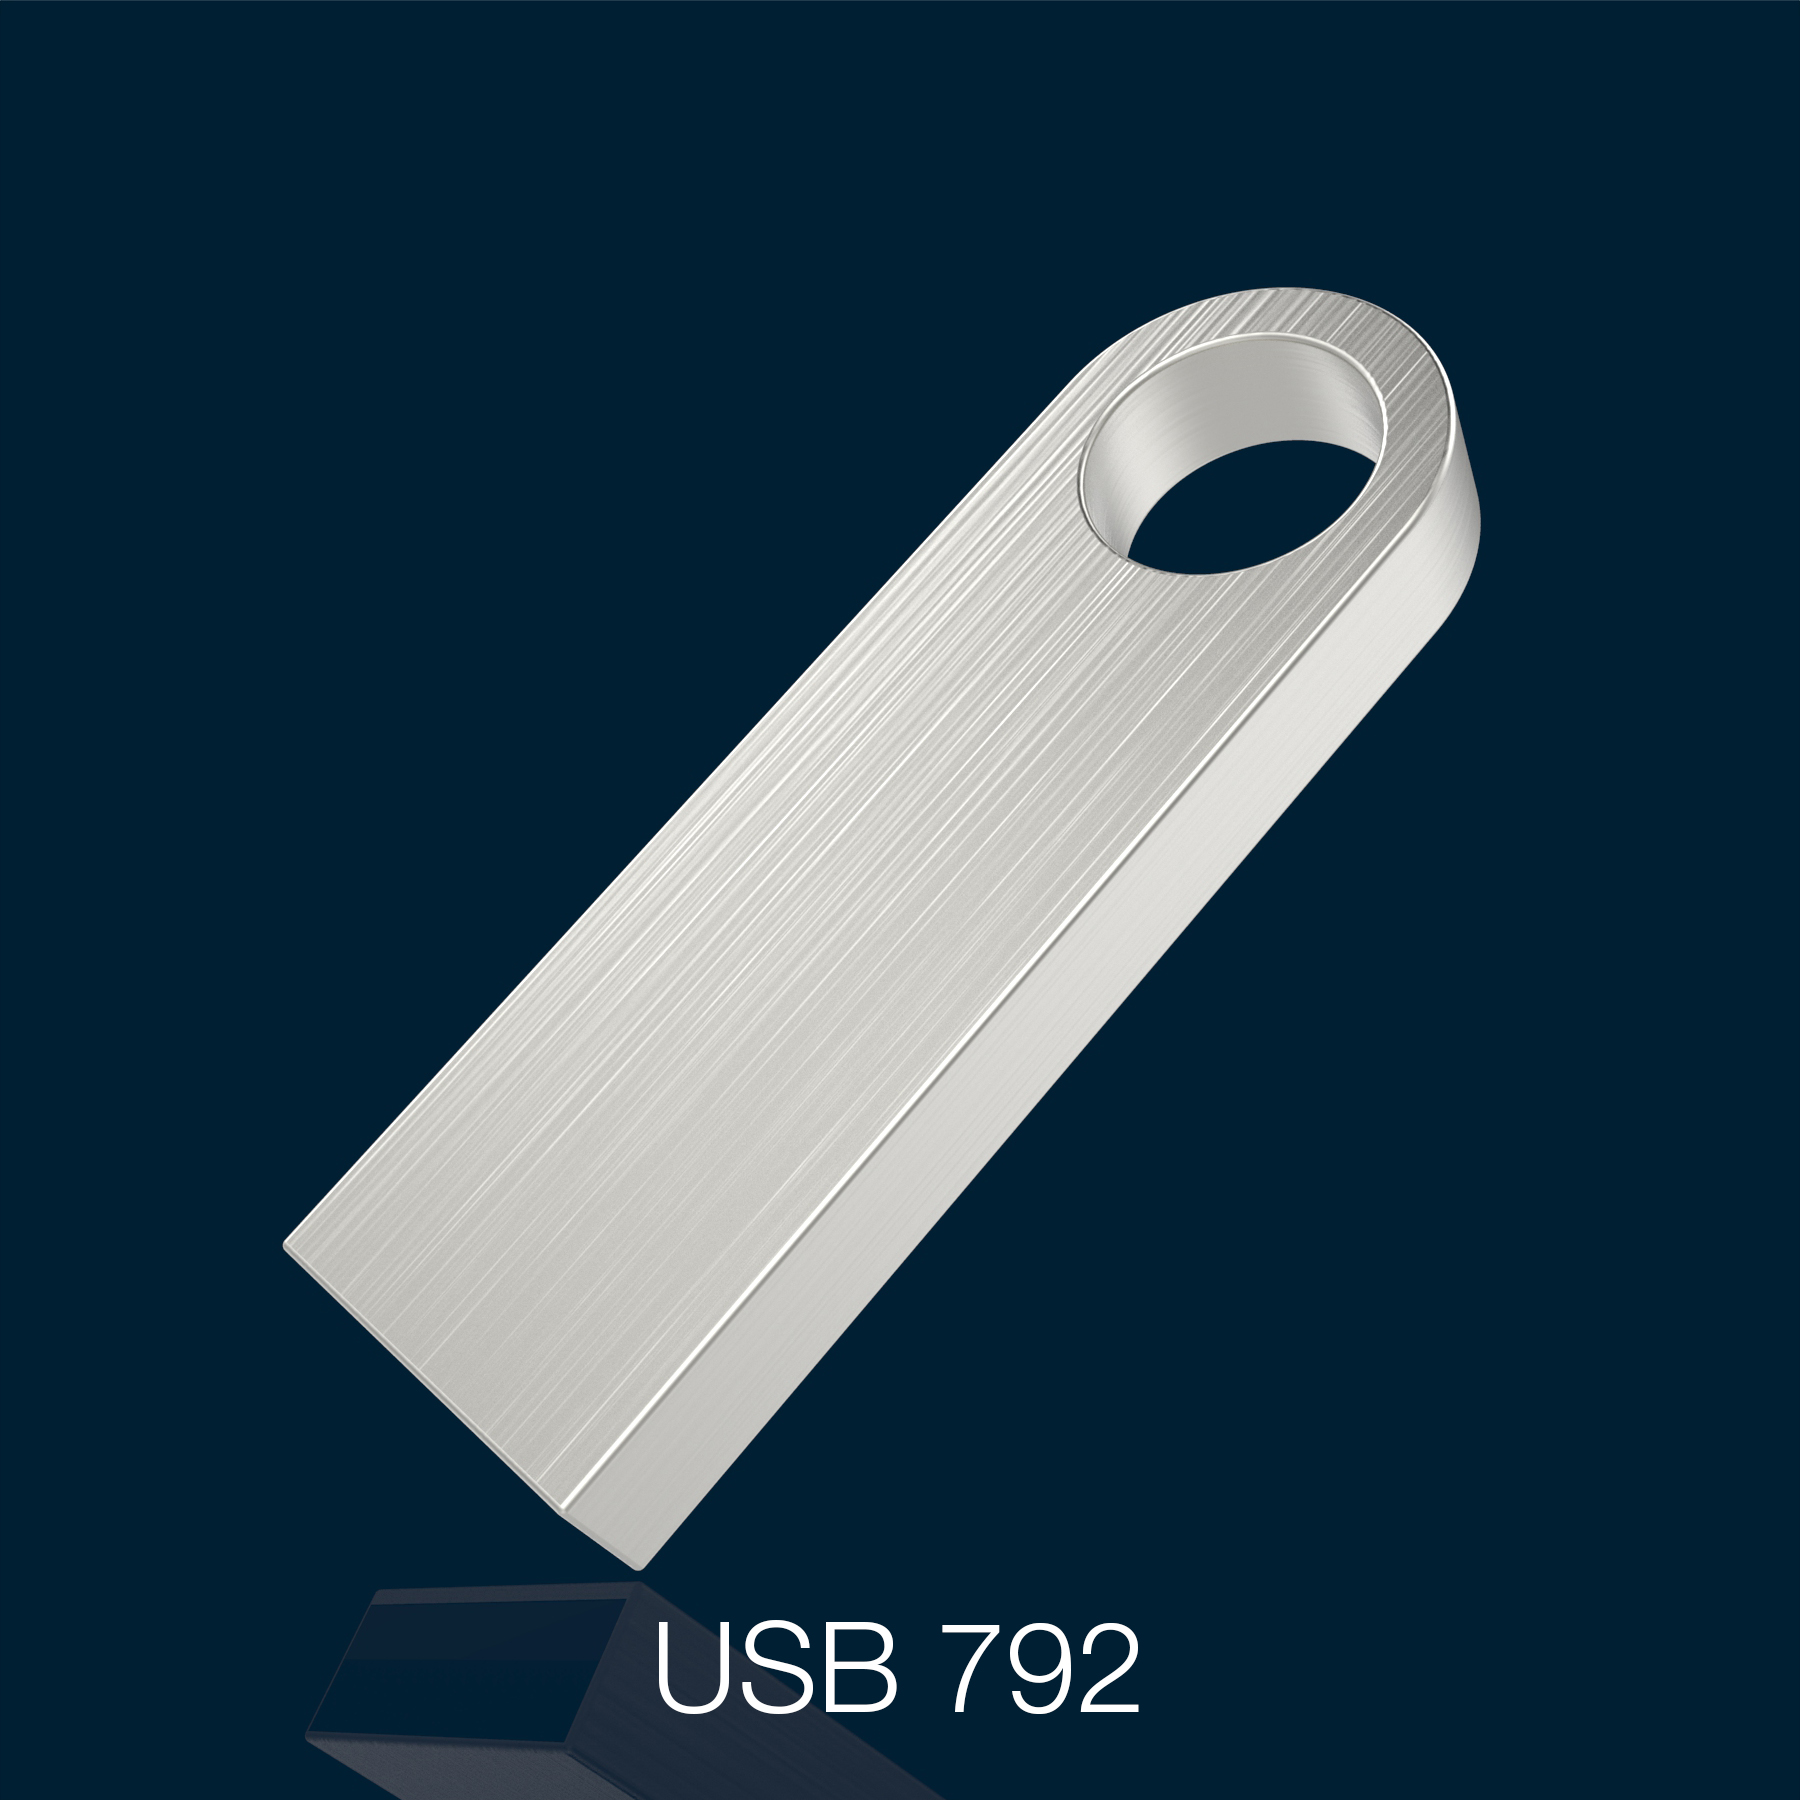 USB 792 thumbnail.jpg